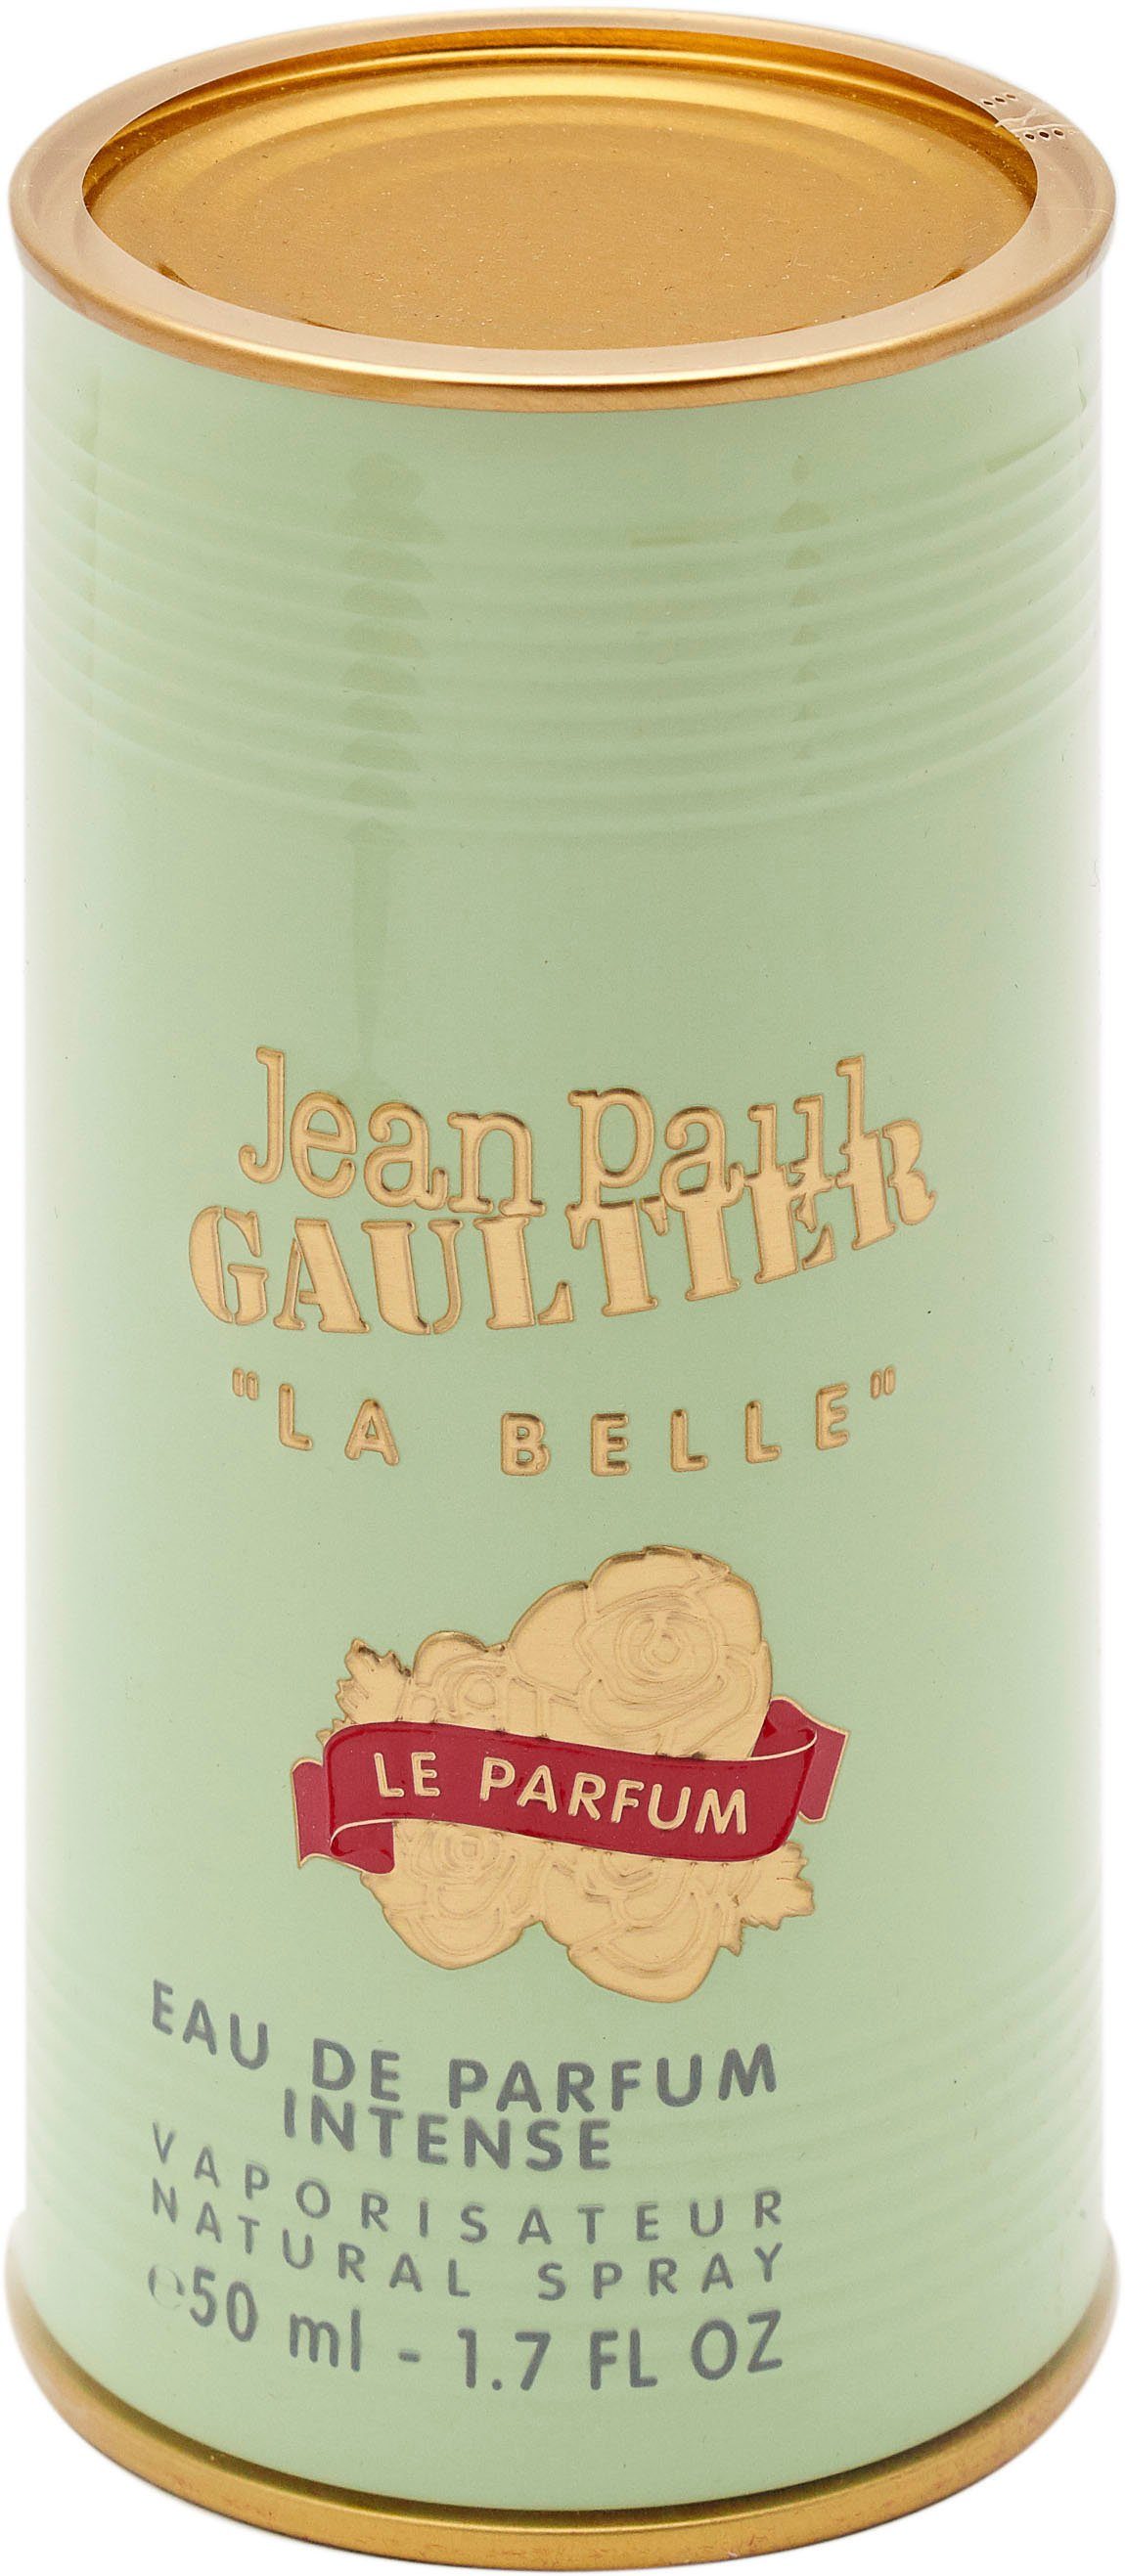 JEAN le de Eau Parfum PAUL Belle Parfum GAULTIER La